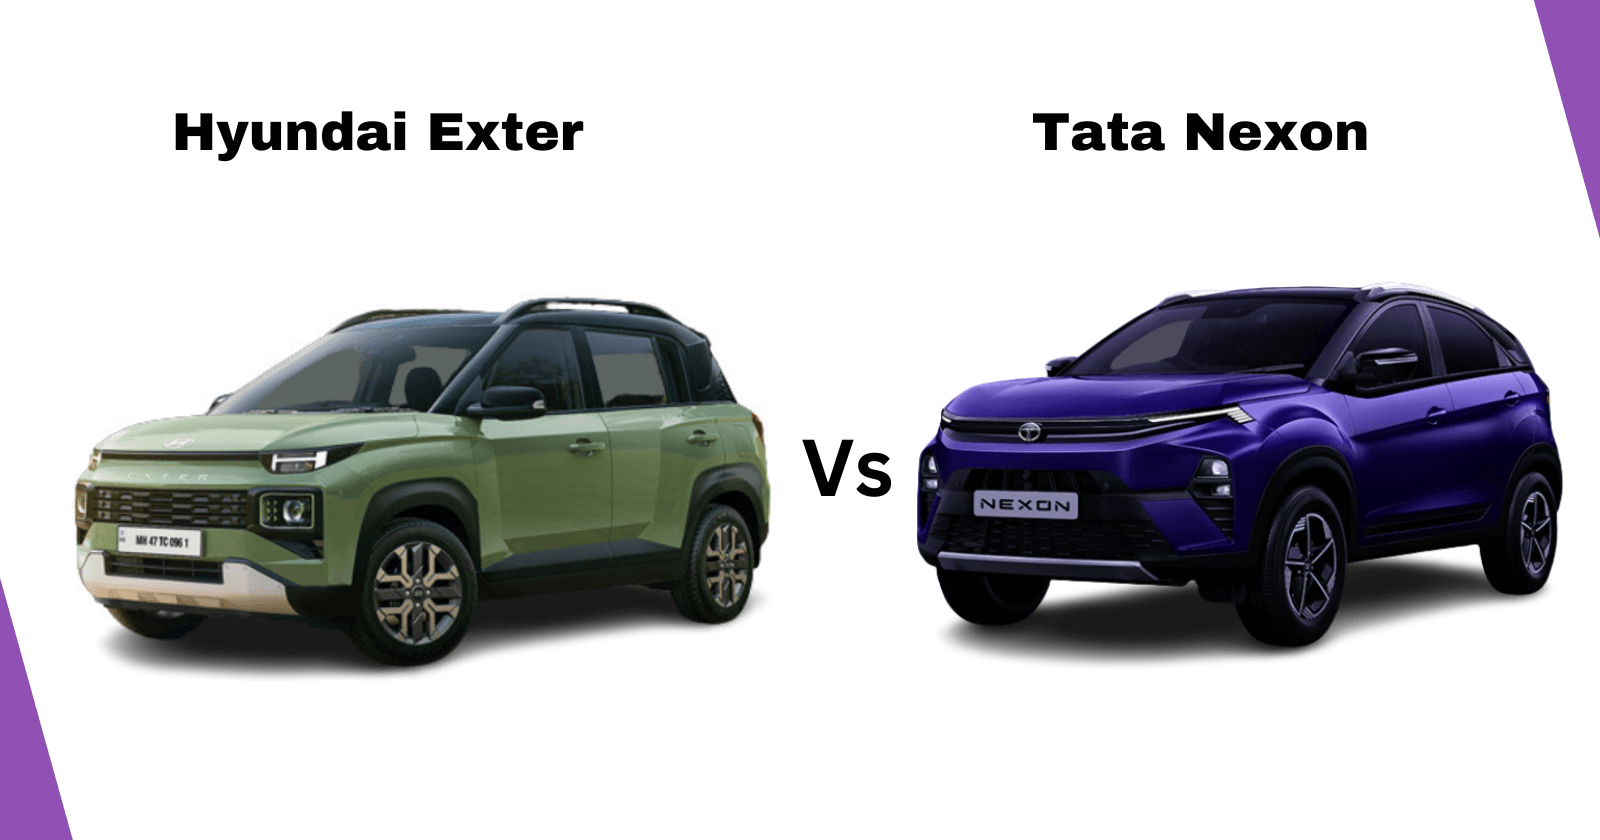 Hyundai Exter vs Tata Nexon